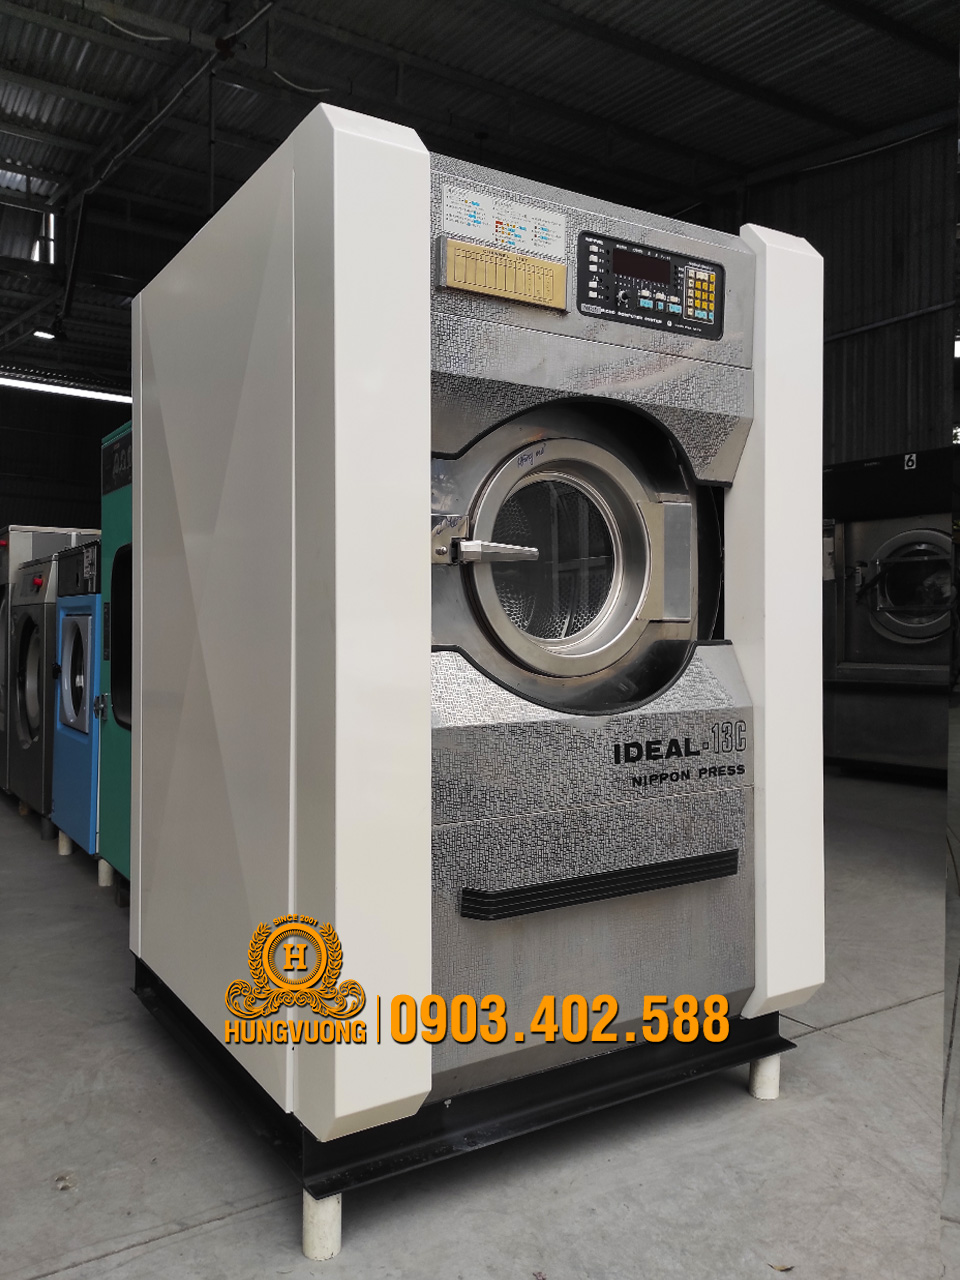 Mặt bên  máy giặt công nghiệp NIPPON PRESS IDEAL-13C, 13kg, chân chống rung, biến tần, Nhật Bản